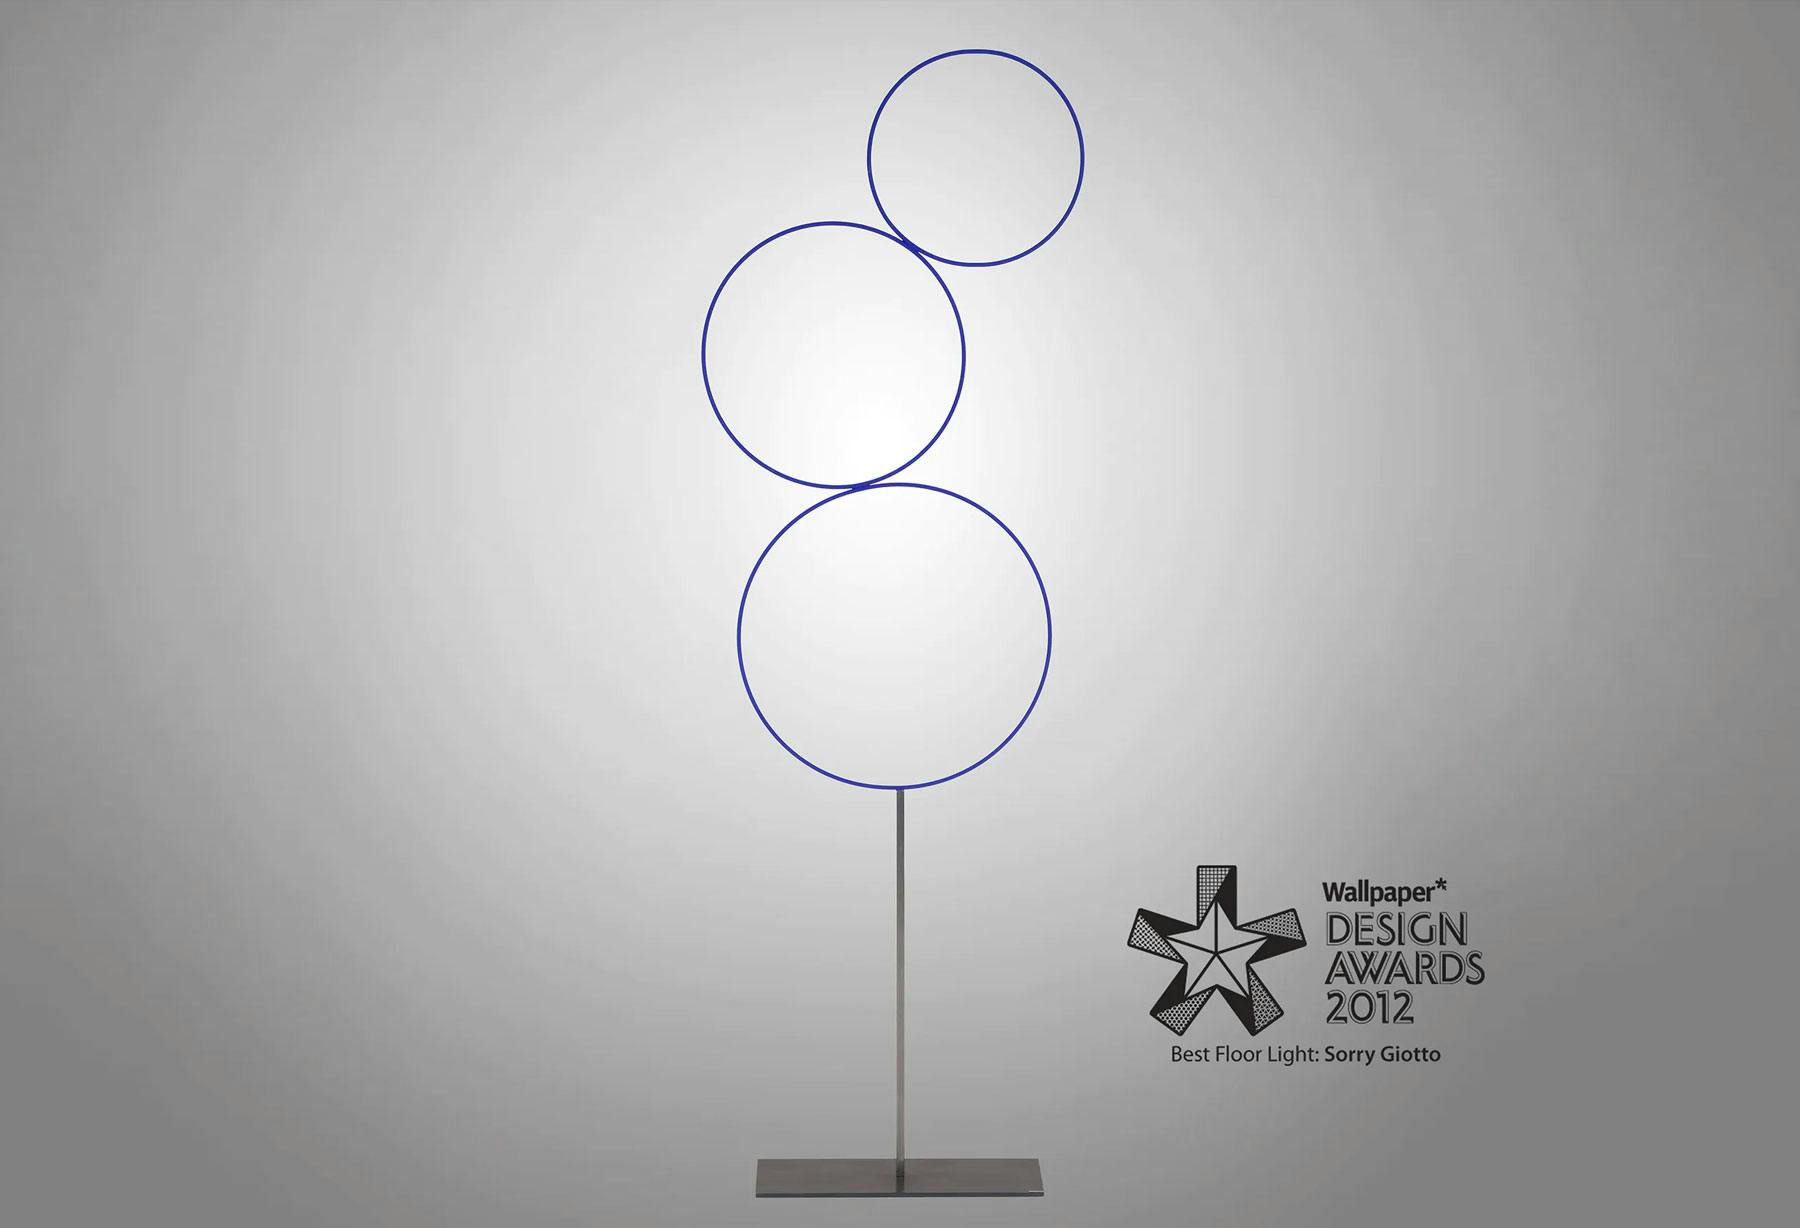 <p>Модель Sorry Giotto была удостоена премии Wallpaper* Design Awards в категории «Лучшее напольное освещение», а также внесена Ассоциацией промышленного дизайна (ADI) в элитный перечень 2012 года</p>
